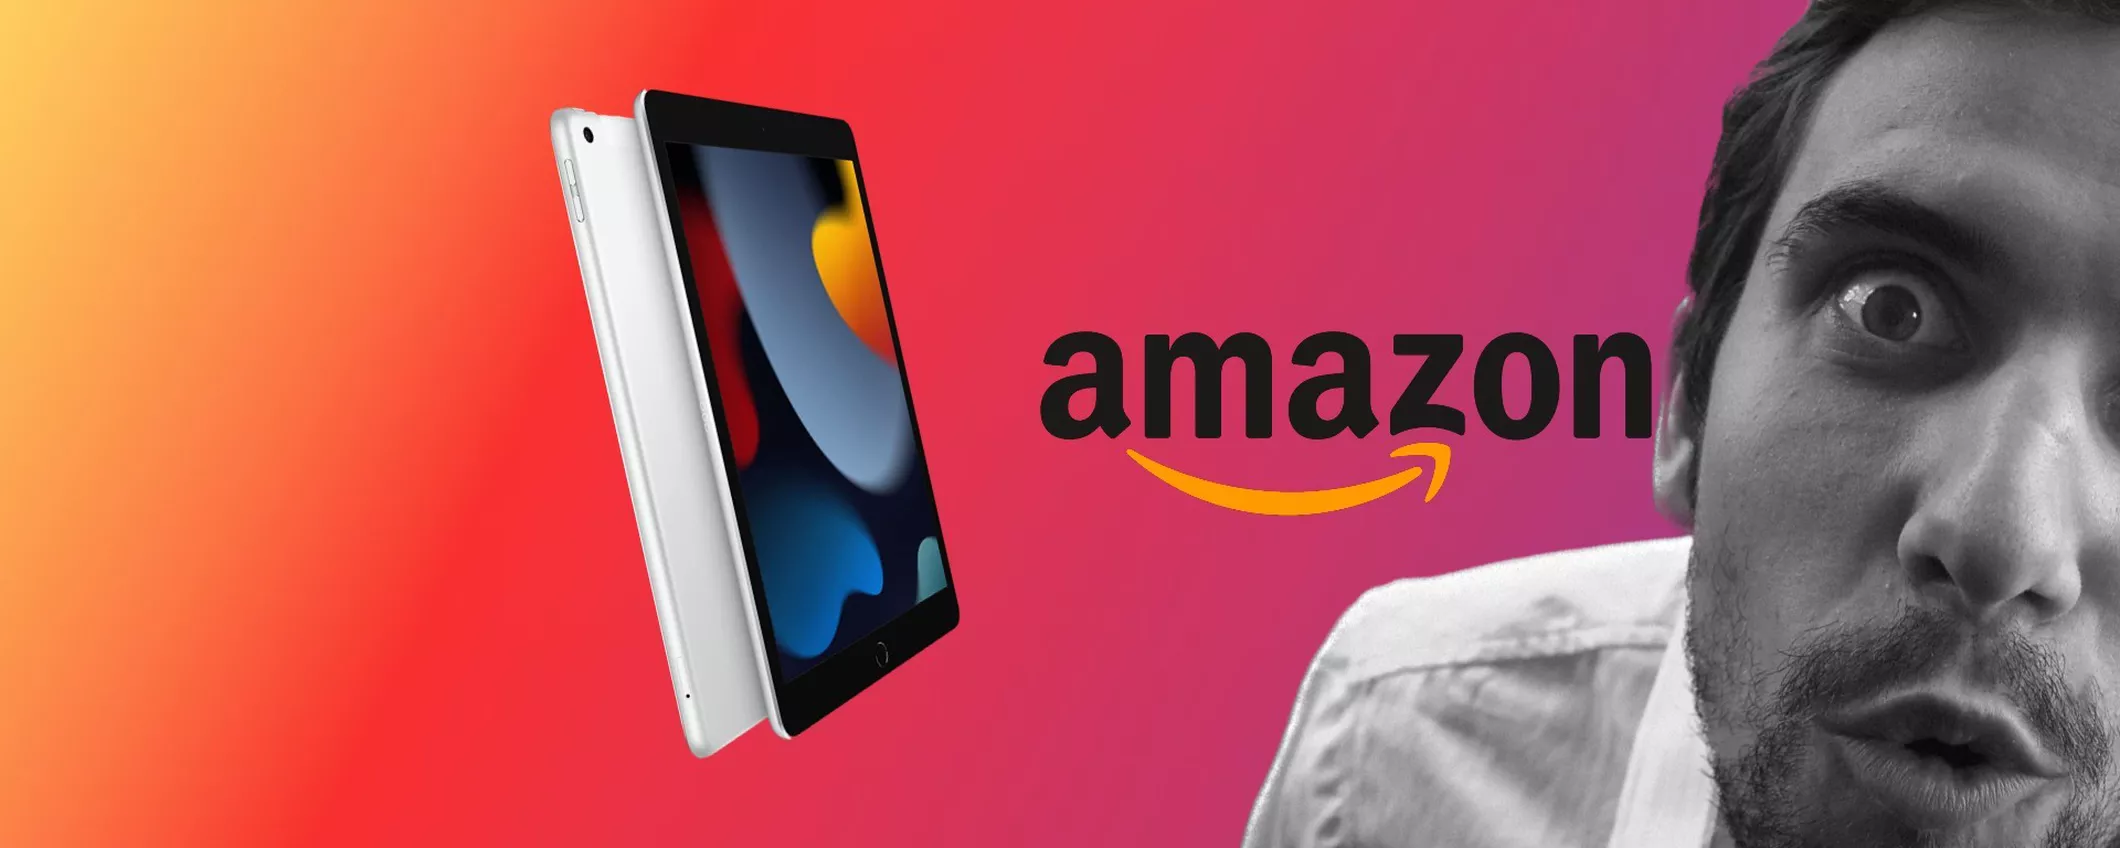 iPad 2021 oggi costa solo 349€: approfitta dello sconto Amazon